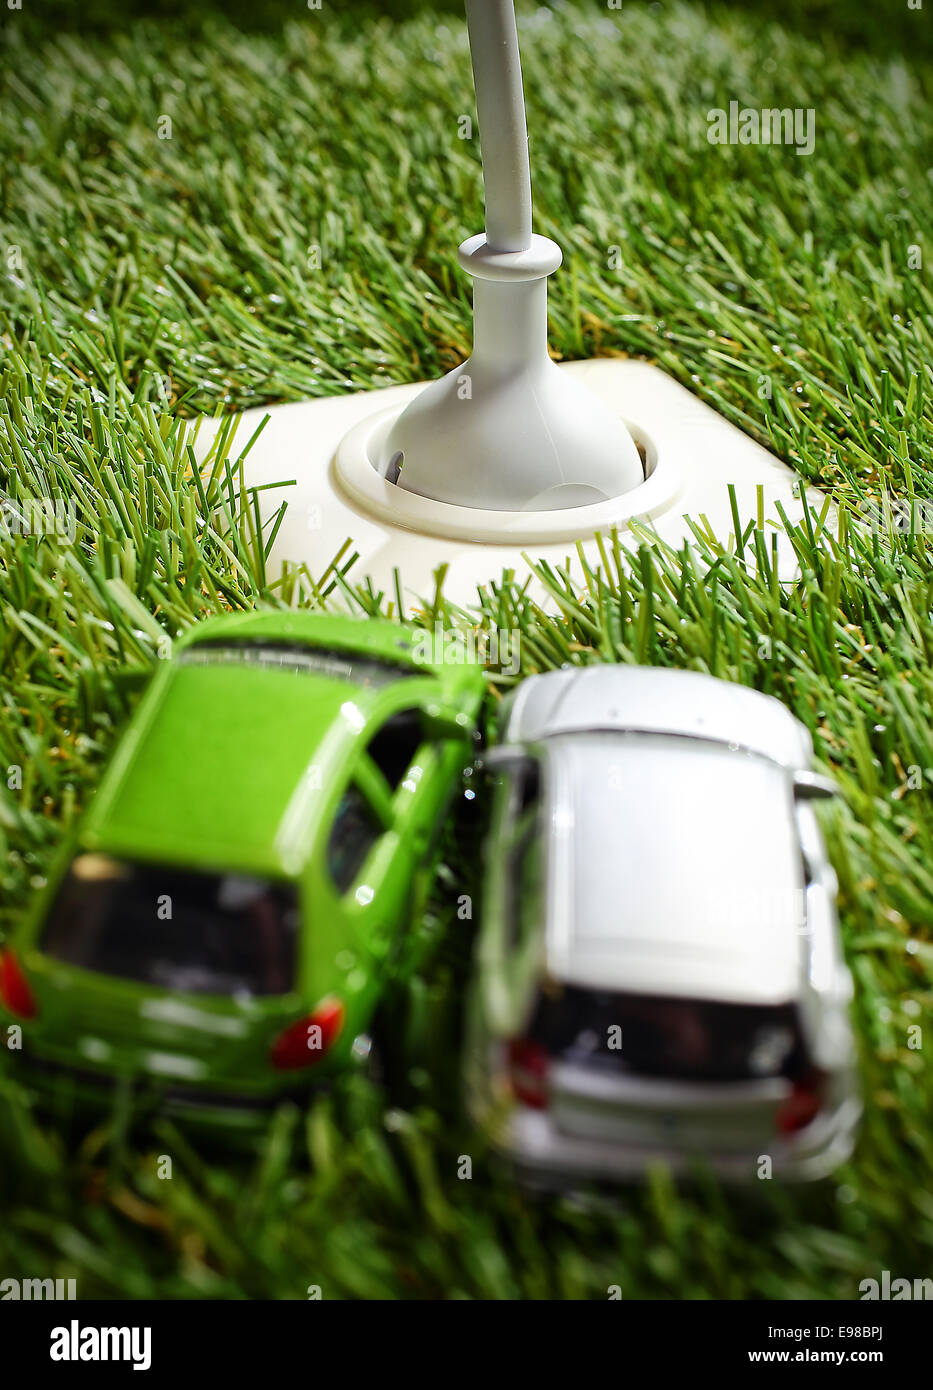 Prise d'alimentation électrique de plein air dans l'herbe verte avec un connecteur et câble inséré et deux modèles de voitures jouets en premier plan Banque D'Images